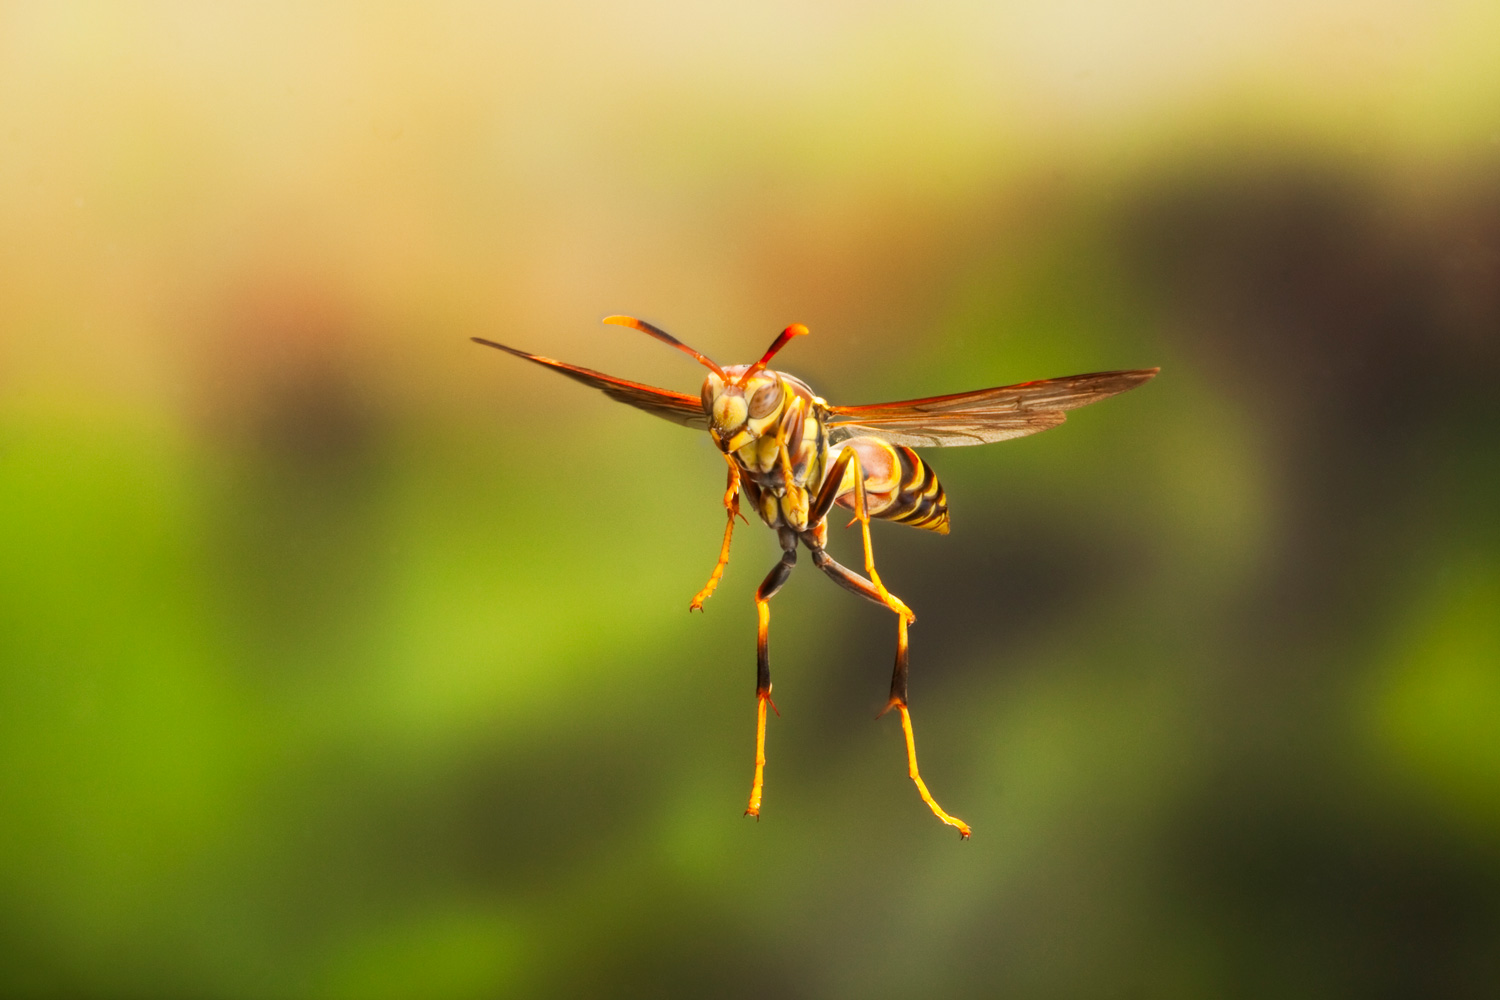 Wasp in Flight - Copyright John Abbott